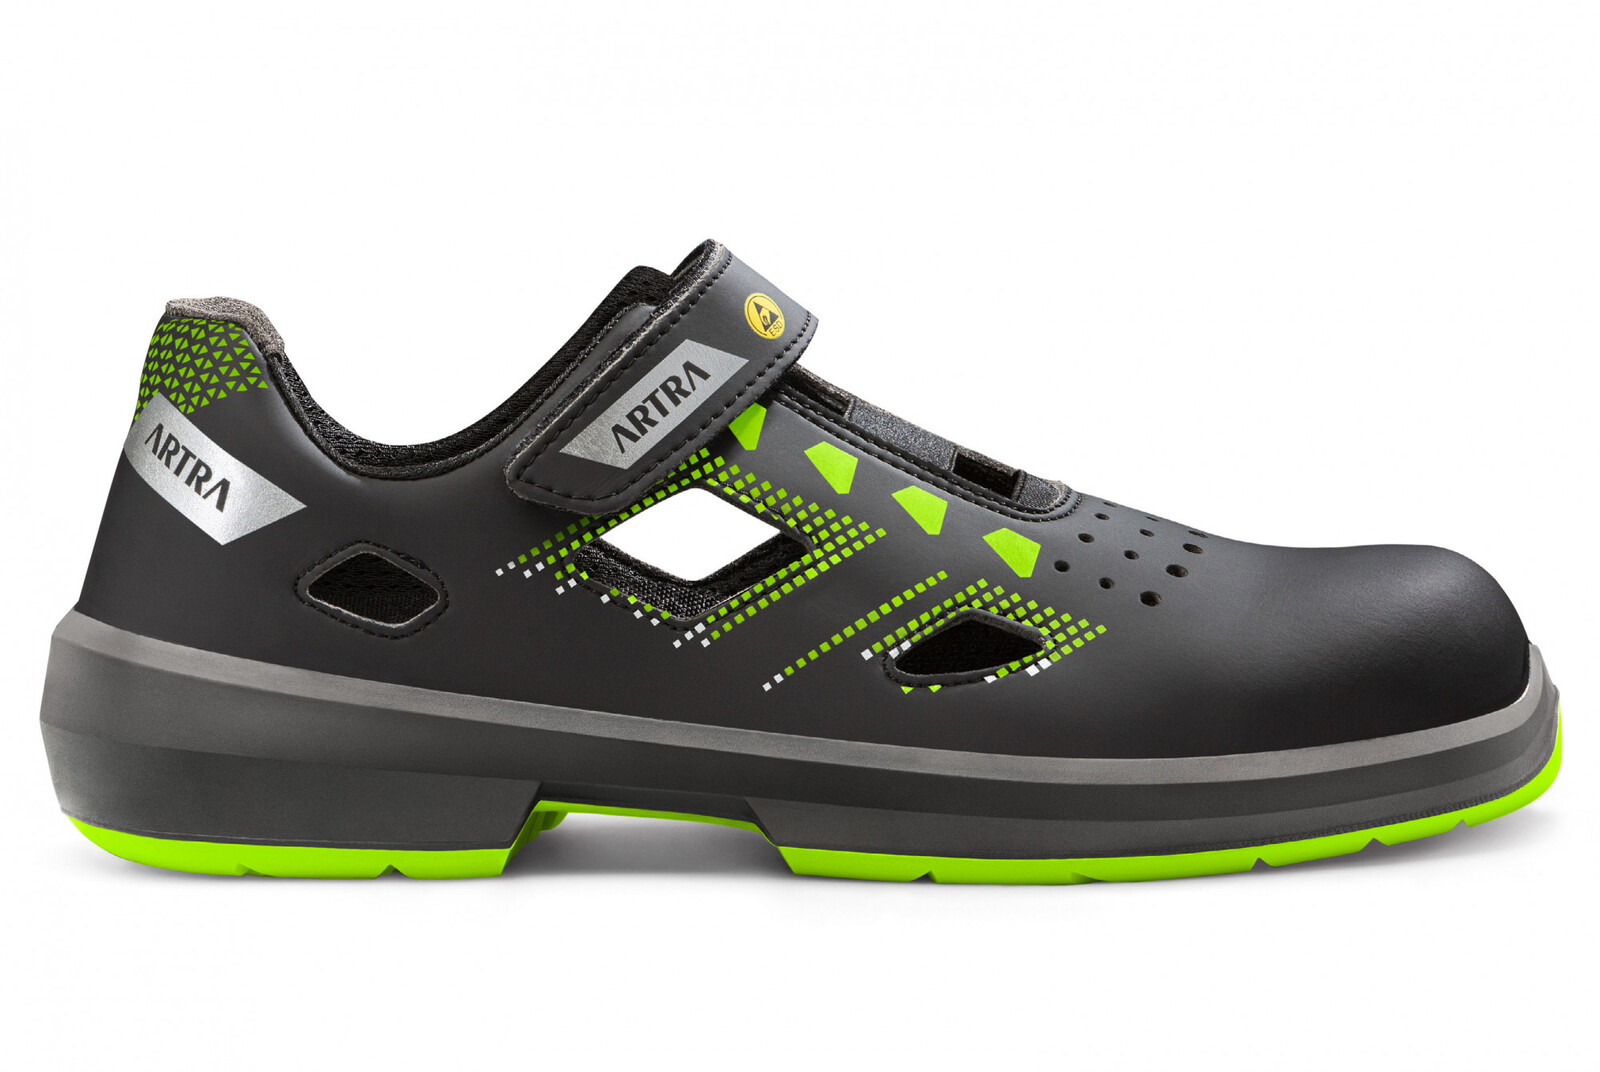 Bezpečnostné sandále Artra Arzo 805 678080 S1P SRC ESD MF - veľkosť: 42, farba: čierna/zelená